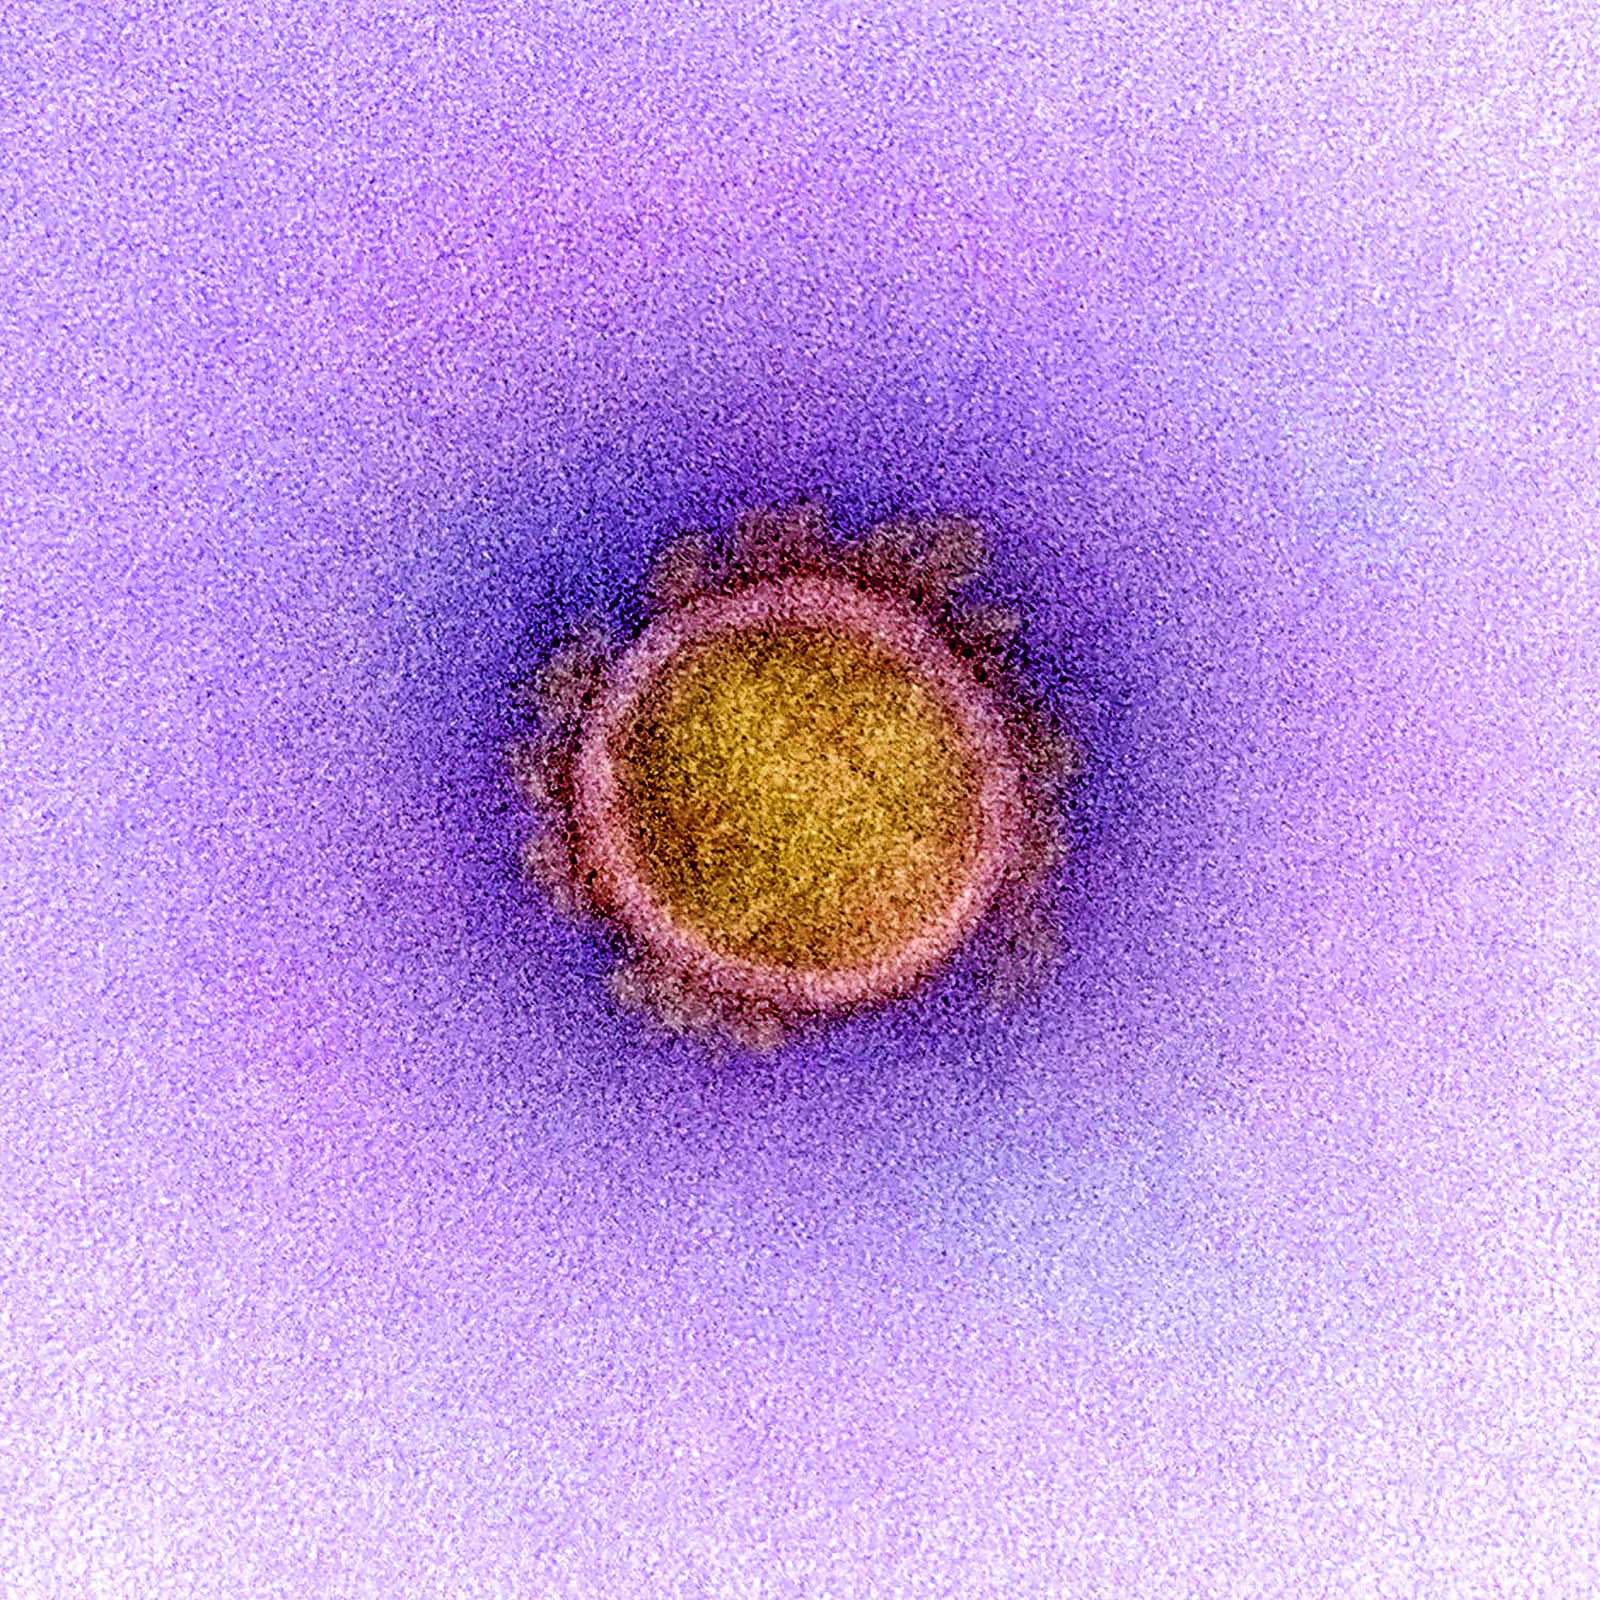 Image of 20200224 zaa p138 in The Year of the Virus - Cosentino